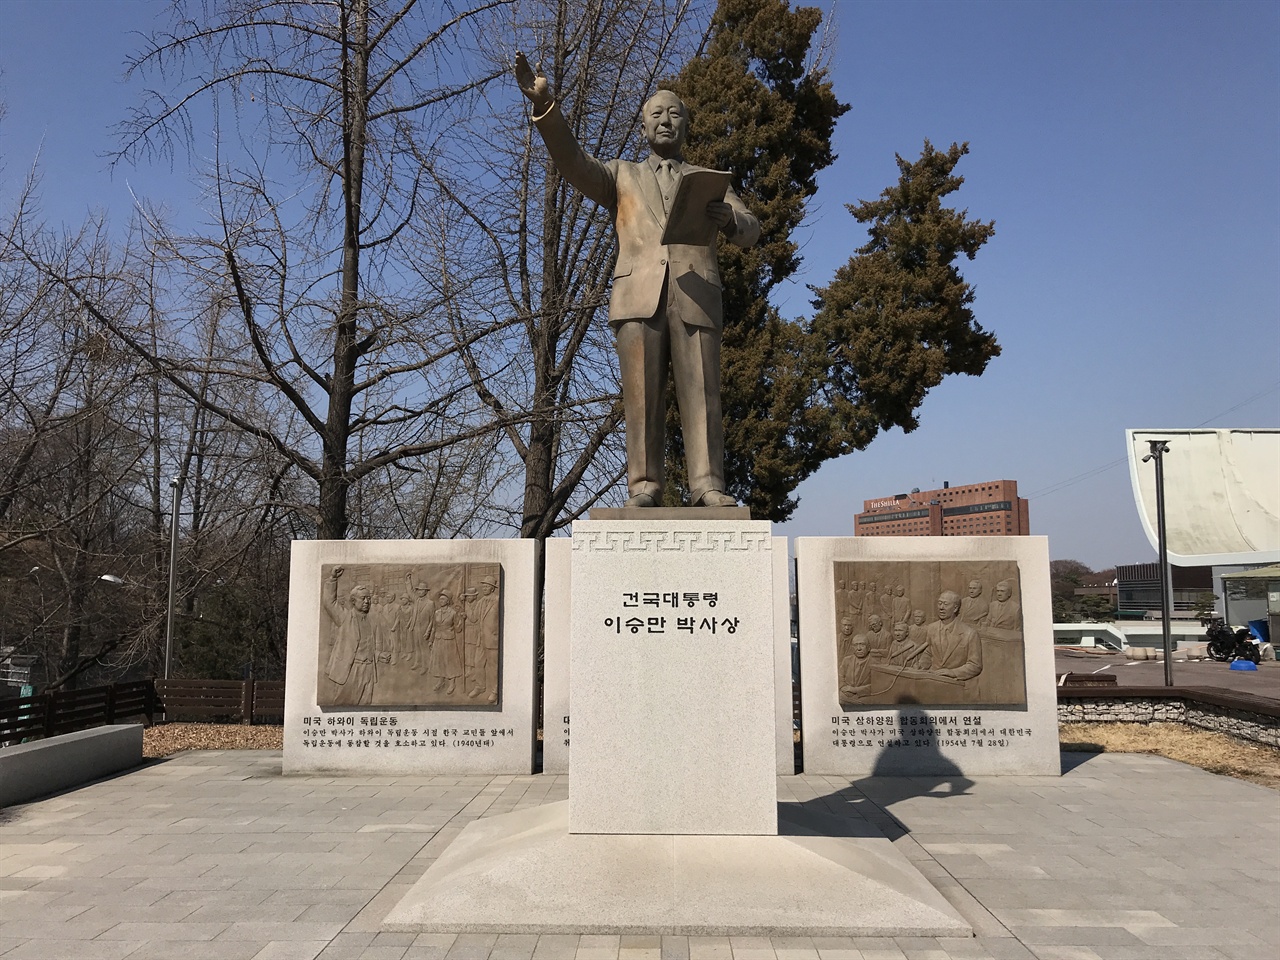 4.19 혁명 과정에서 탑골공원과 남산에 있던 이승만 동상은 모두 철거됐다. 2011년 8월 25일 한국자유총연맹은 4.19 혁명 유족과 시민단체의 반대에도 불구하고 이승만 동상을 다시 세웠다.